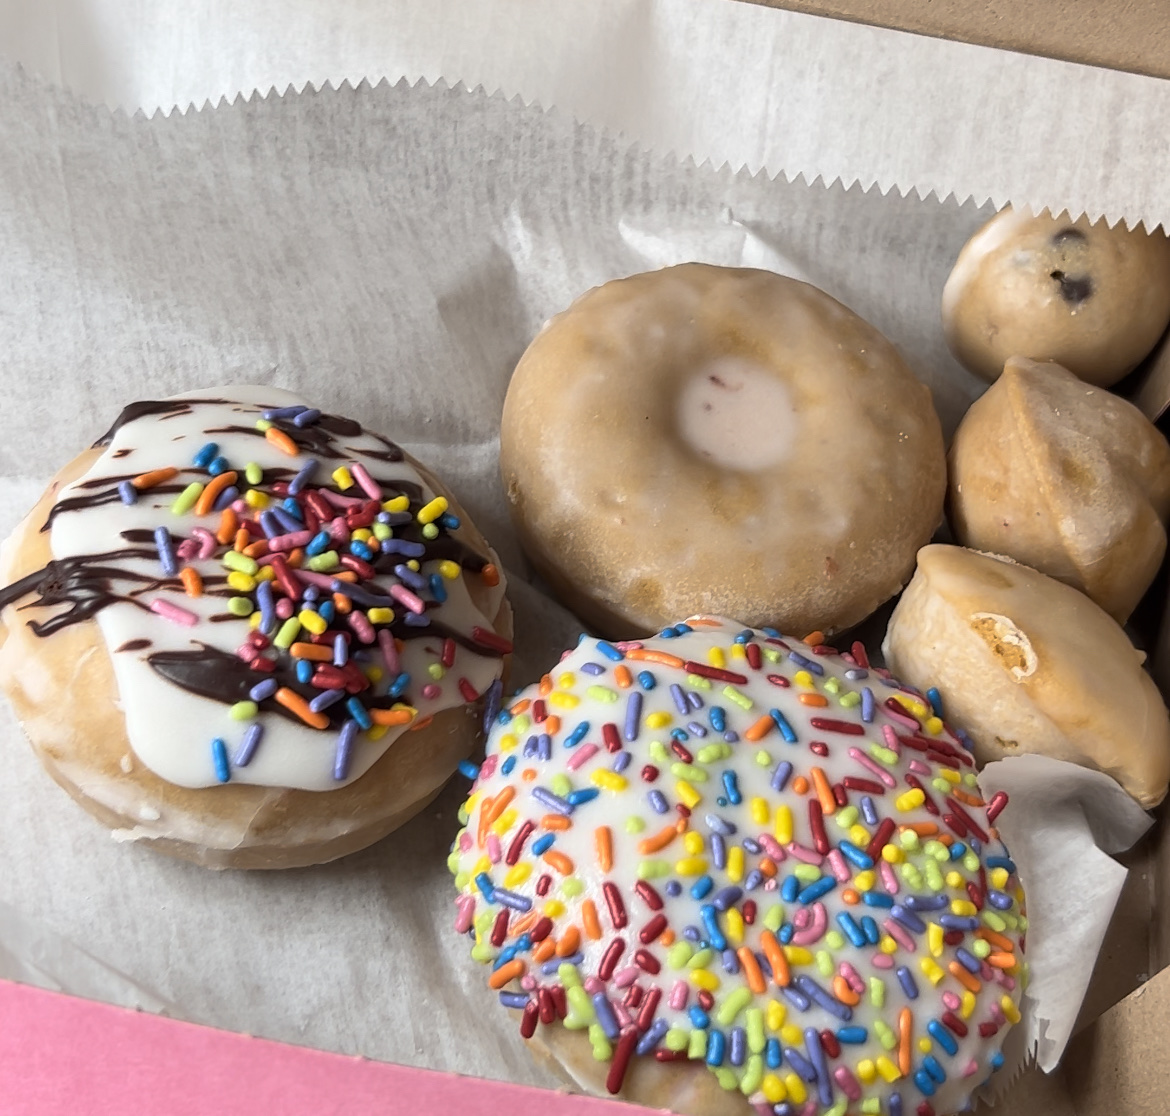 Donuts and munchkins variety!